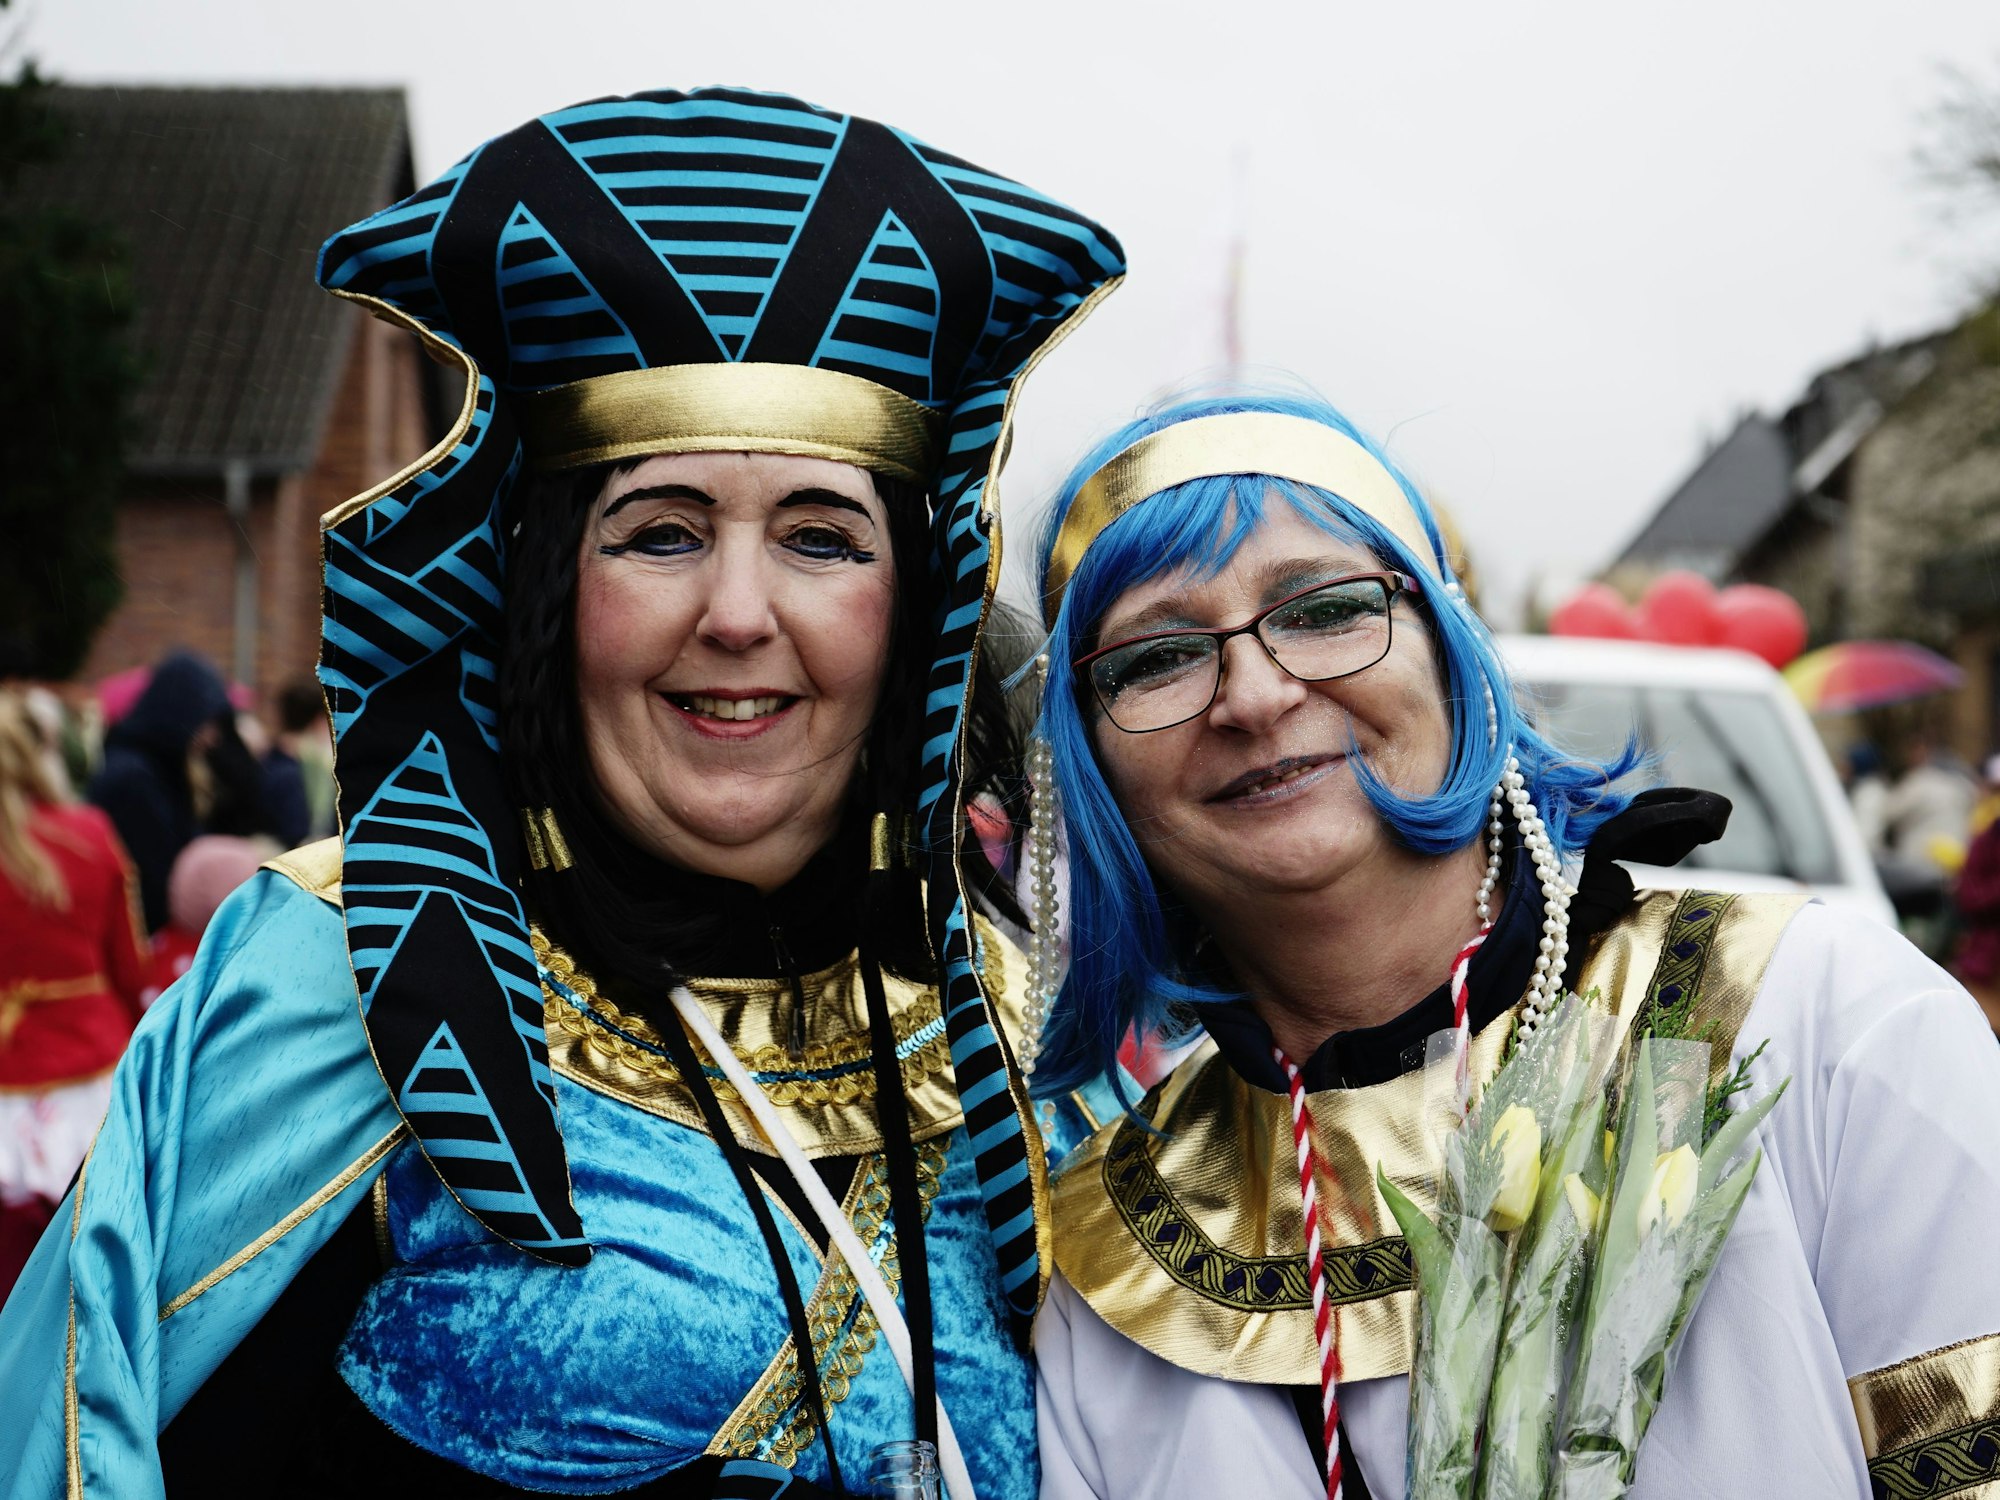 Vielfalt der Kostüme hieß es beim Karnevalszug in Glessen. Auch farbenfrohe Pharaoninnen mischten sich unter die Zugteilnehmer.